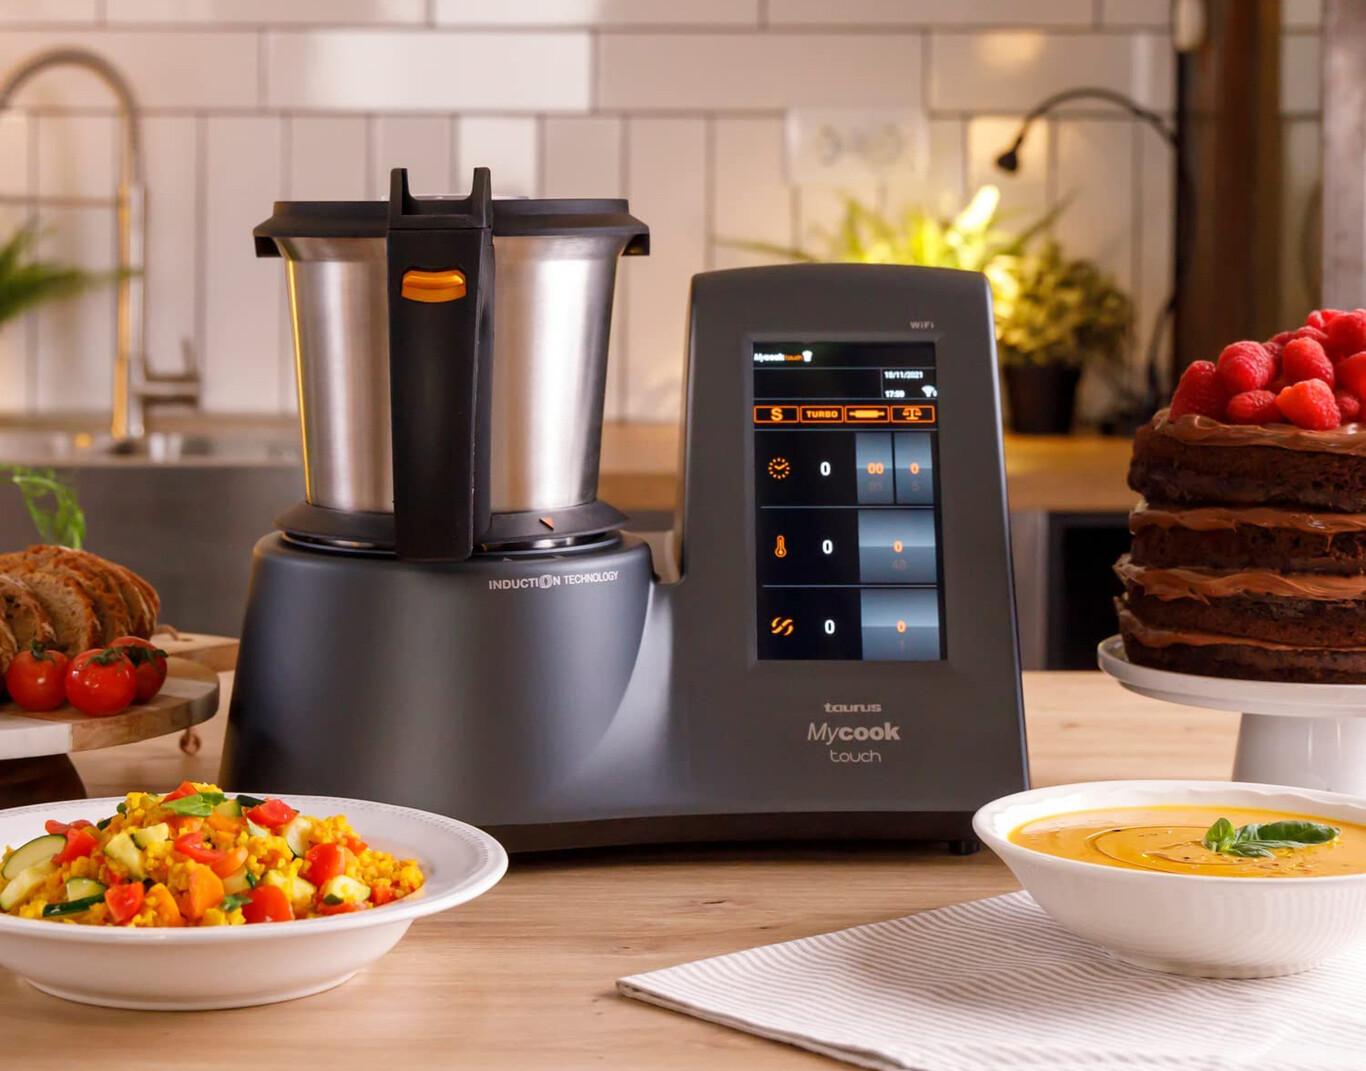 Las ventajas de tener un robot de cocina en tu hogar